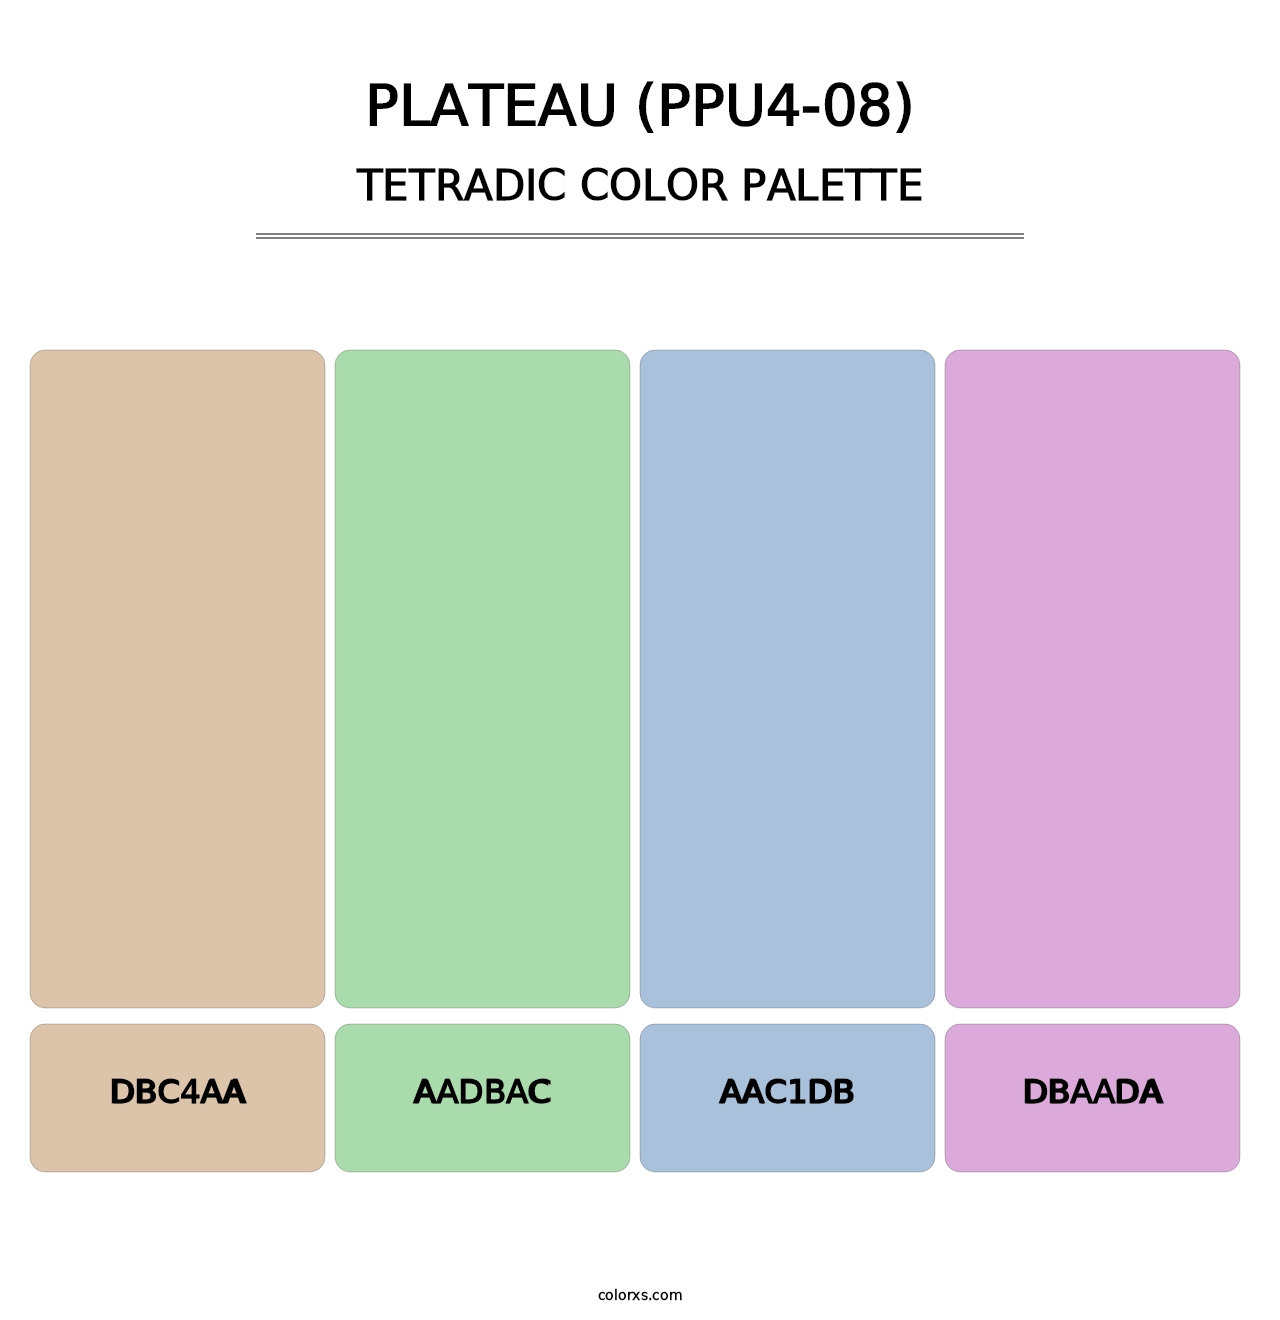 Plateau (PPU4-08) - Tetradic Color Palette